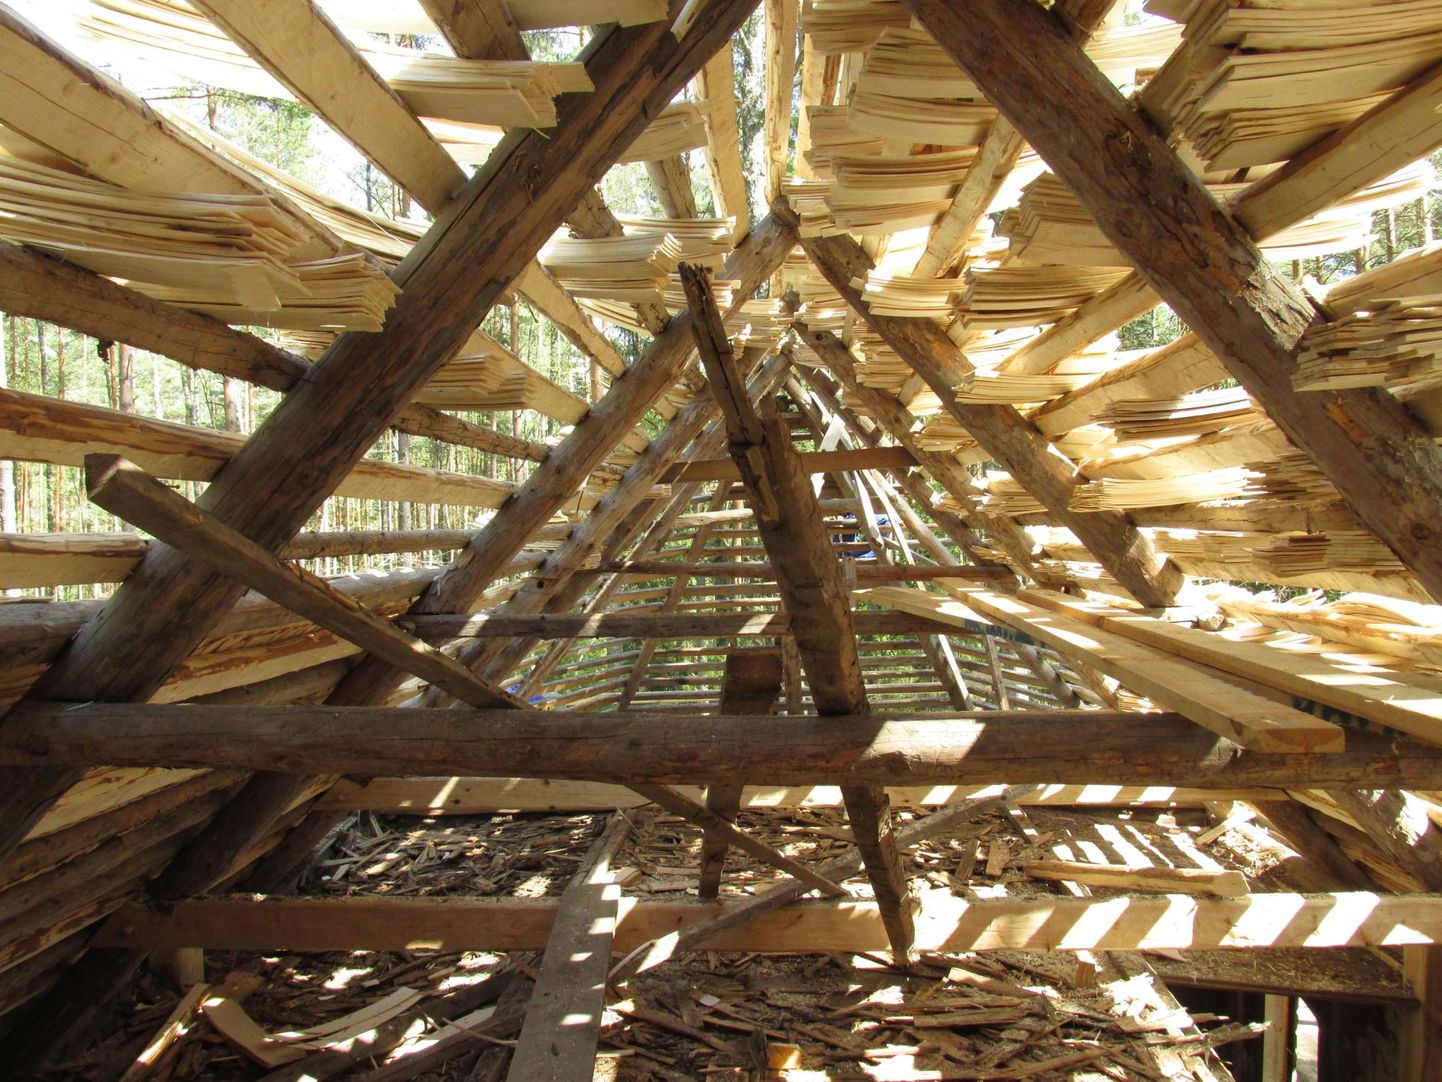 Puitkatuste levik hoogustus uuesti 19. sajandi teisest poolest, kui hakati rohkem kasutama rehepeksumasinaid, sest selles pekstud õled ei sobinud enam katusekatteks.